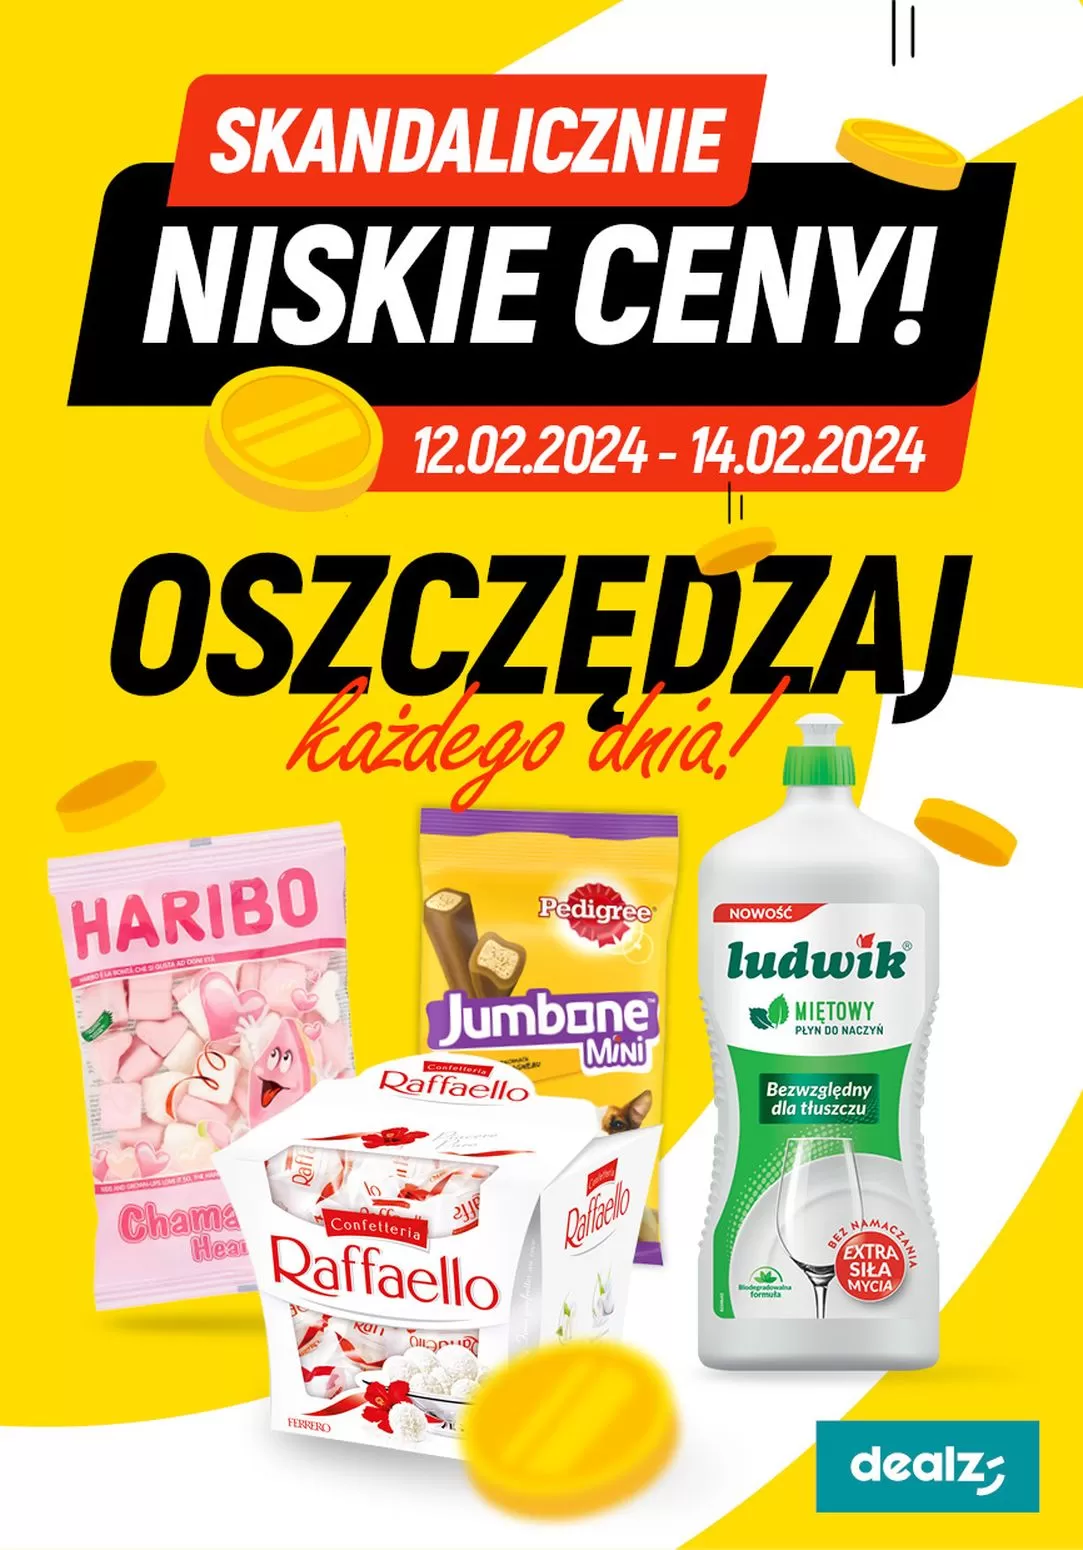 Skandalicznie niskie ceny - Dealz Gazetka promocyjna - W tym tygodniu - oferta 'brak'